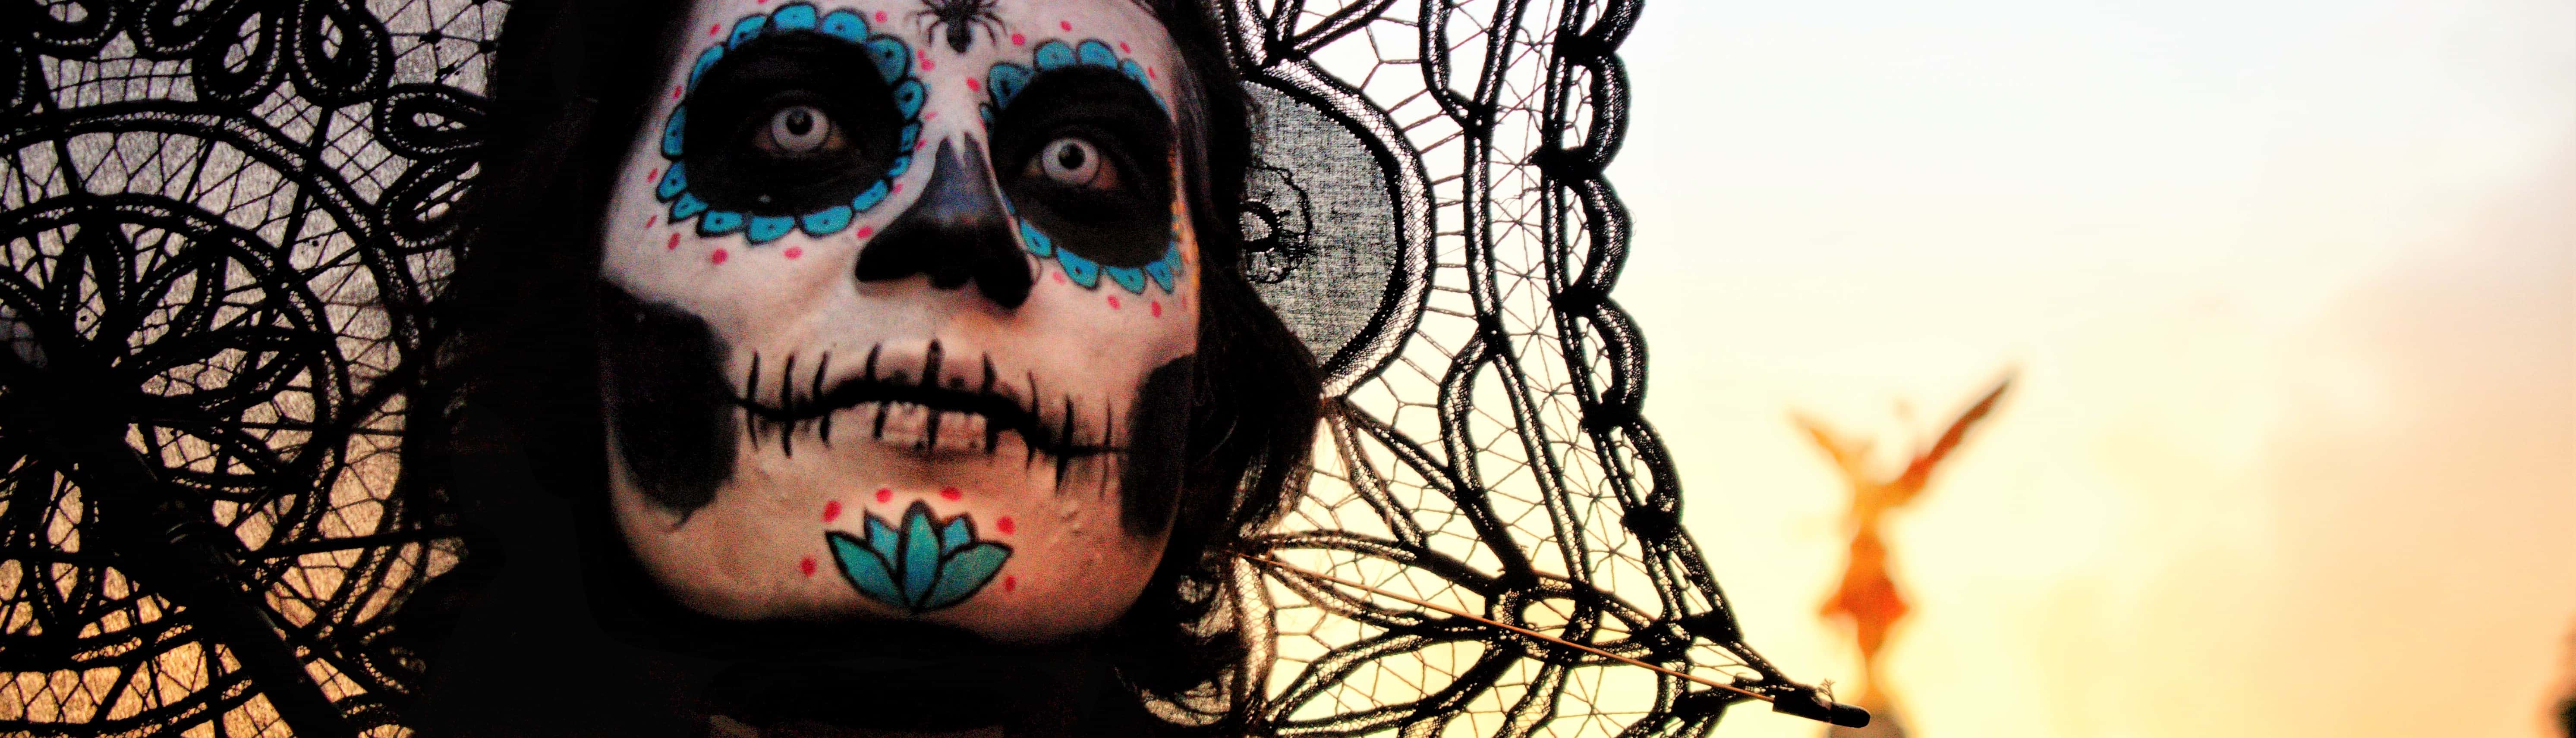 Día de los muertos - célébrations et déguisements au Mexique